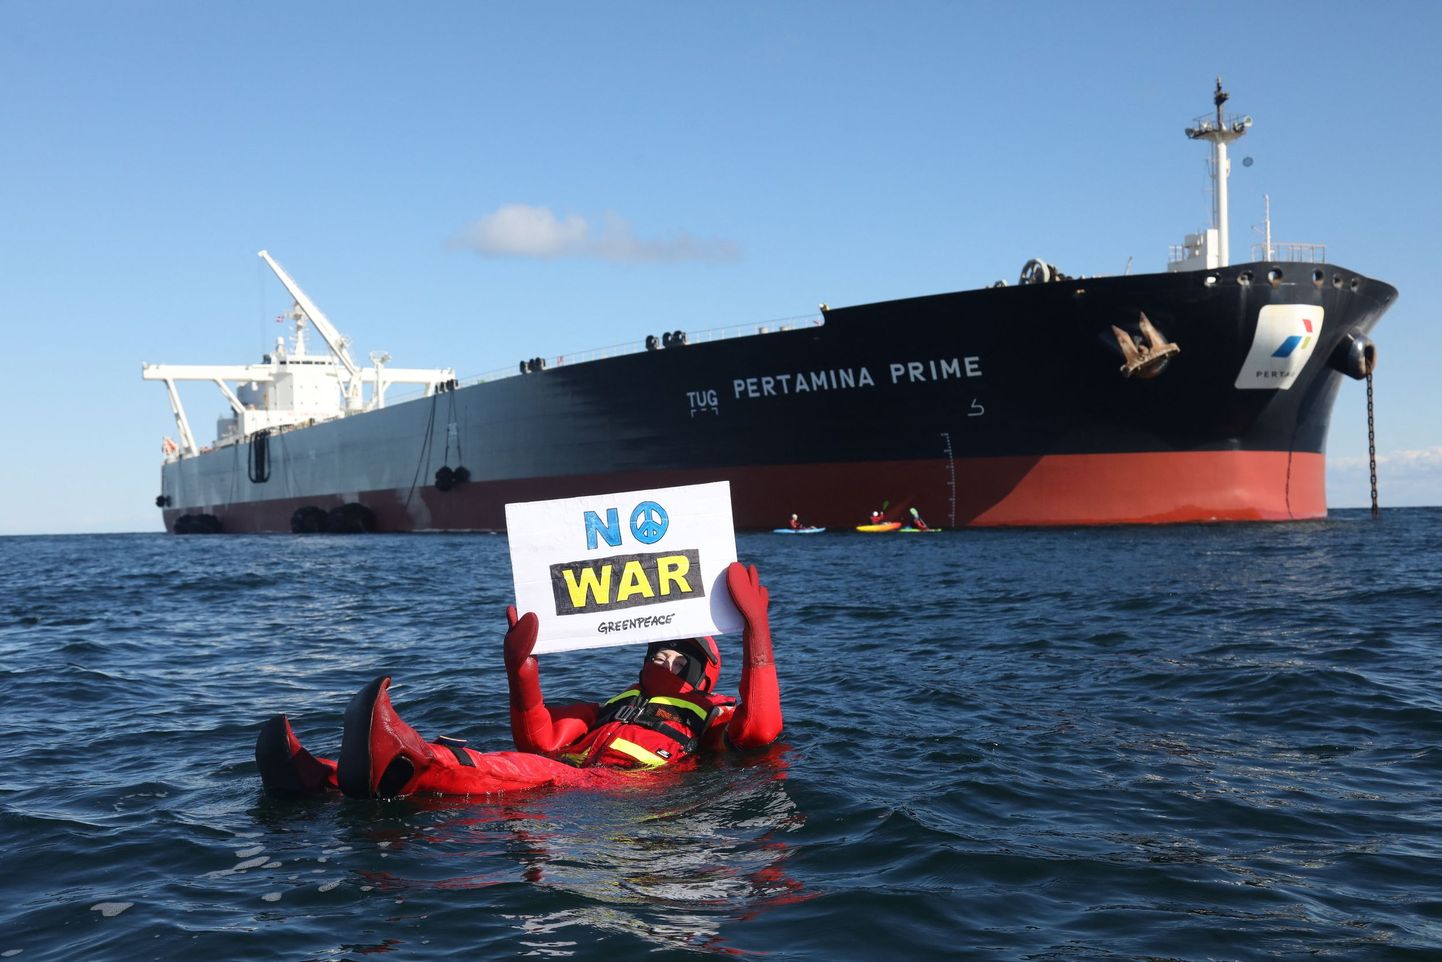 Merepäästekostüümis Greenpeace aktivist sõjavastase plakatiga takistab Venemaa naftat vedava laeva pardumist Singapuri tankeri Pertamina Prime külge. Taamal Greenpeace liikmed kajakkidel.